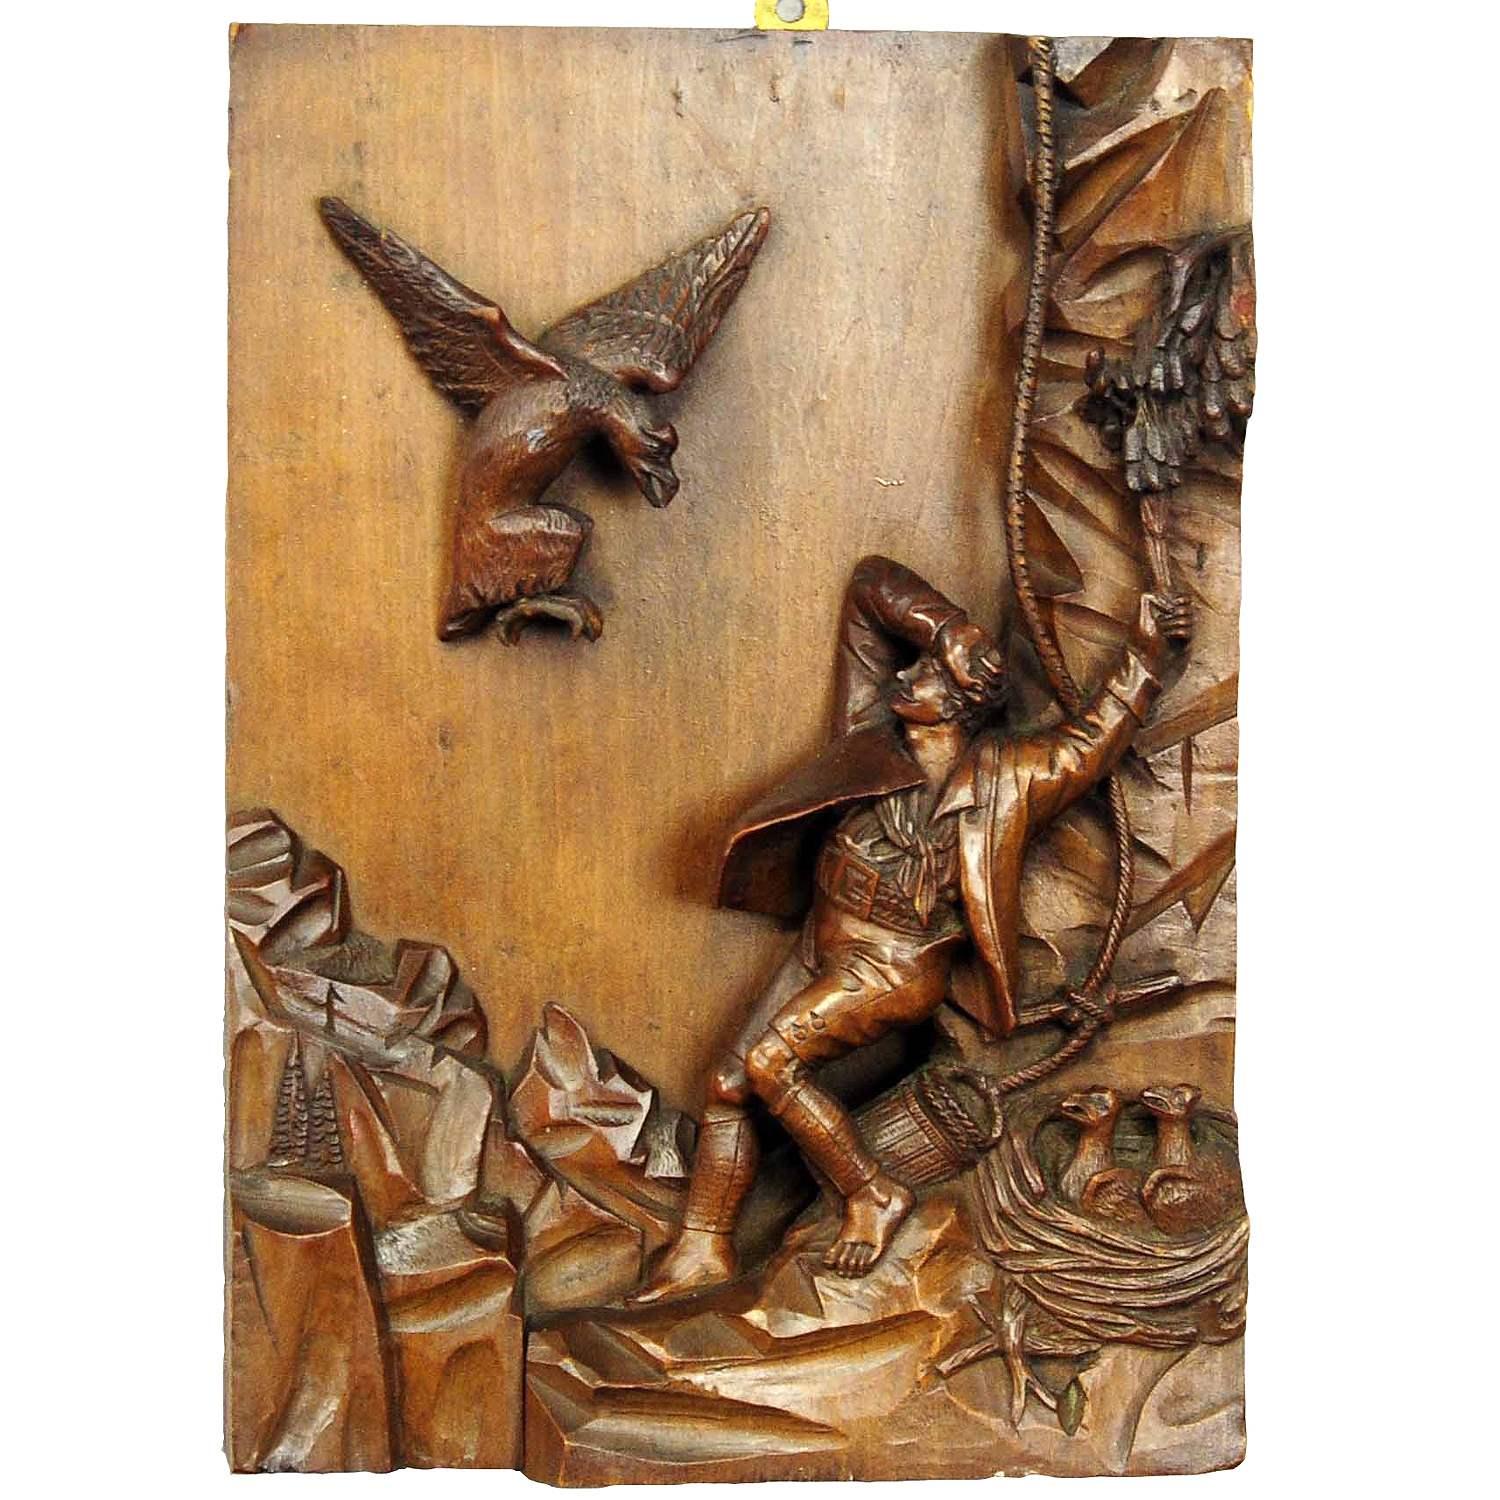 Sculpture en relief en bois nid Robber, black forest ca. 1890

Une belle sculpture en bois représentant une scène de vol de nid d'un rapace par un homme. Le modèle de cette sculpture a été peint par Josef Anton Strassgschwandtner (1826-1881) et